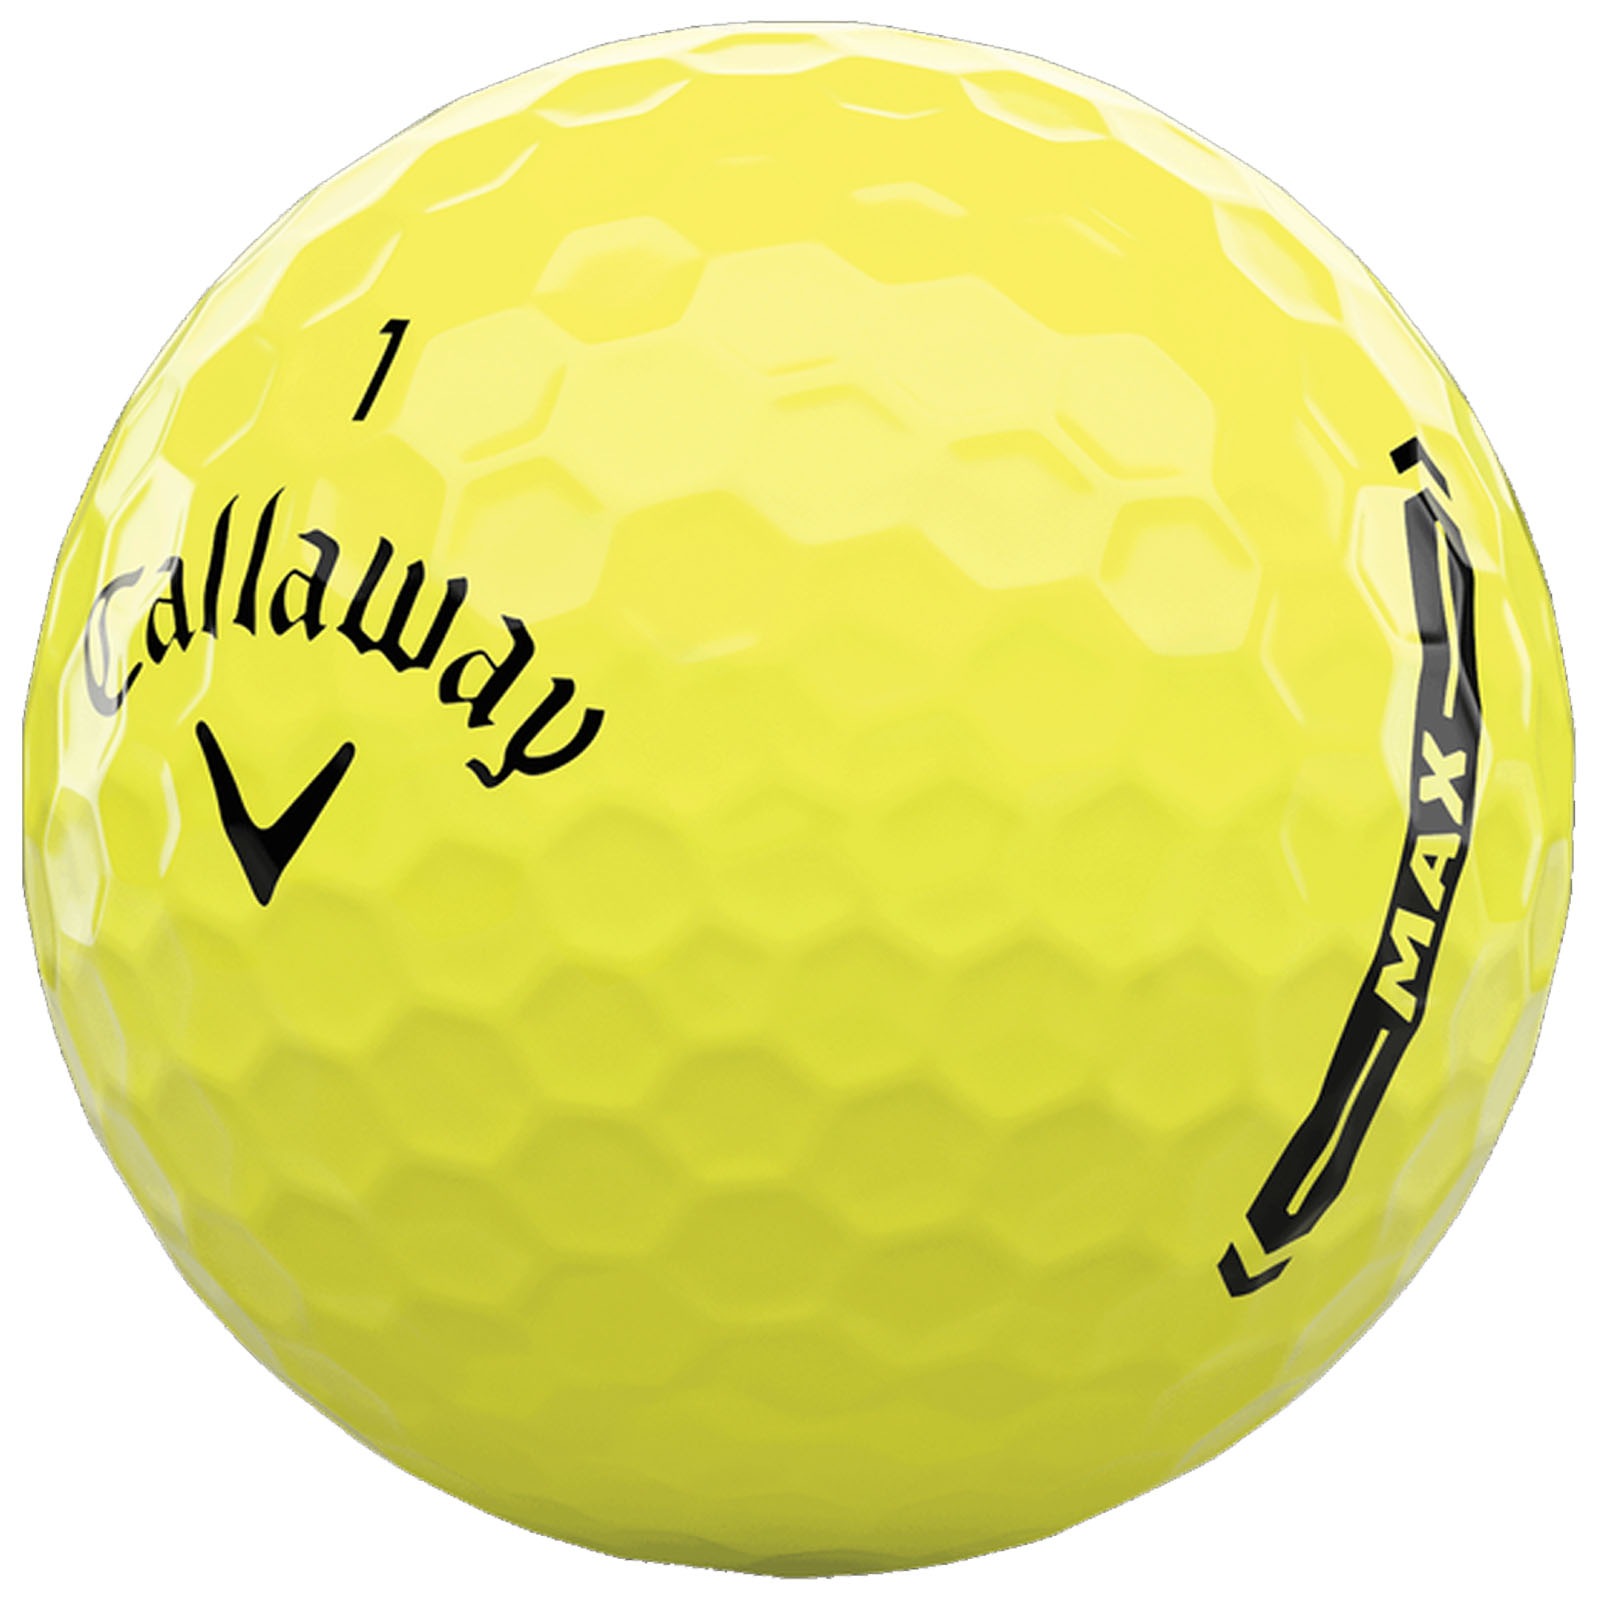 Max ball. Шар для гольфа. Шарики для гольфа Callaway. Мяч для гольфа Callaway CXR Power. Callaway Orange Golf balls.